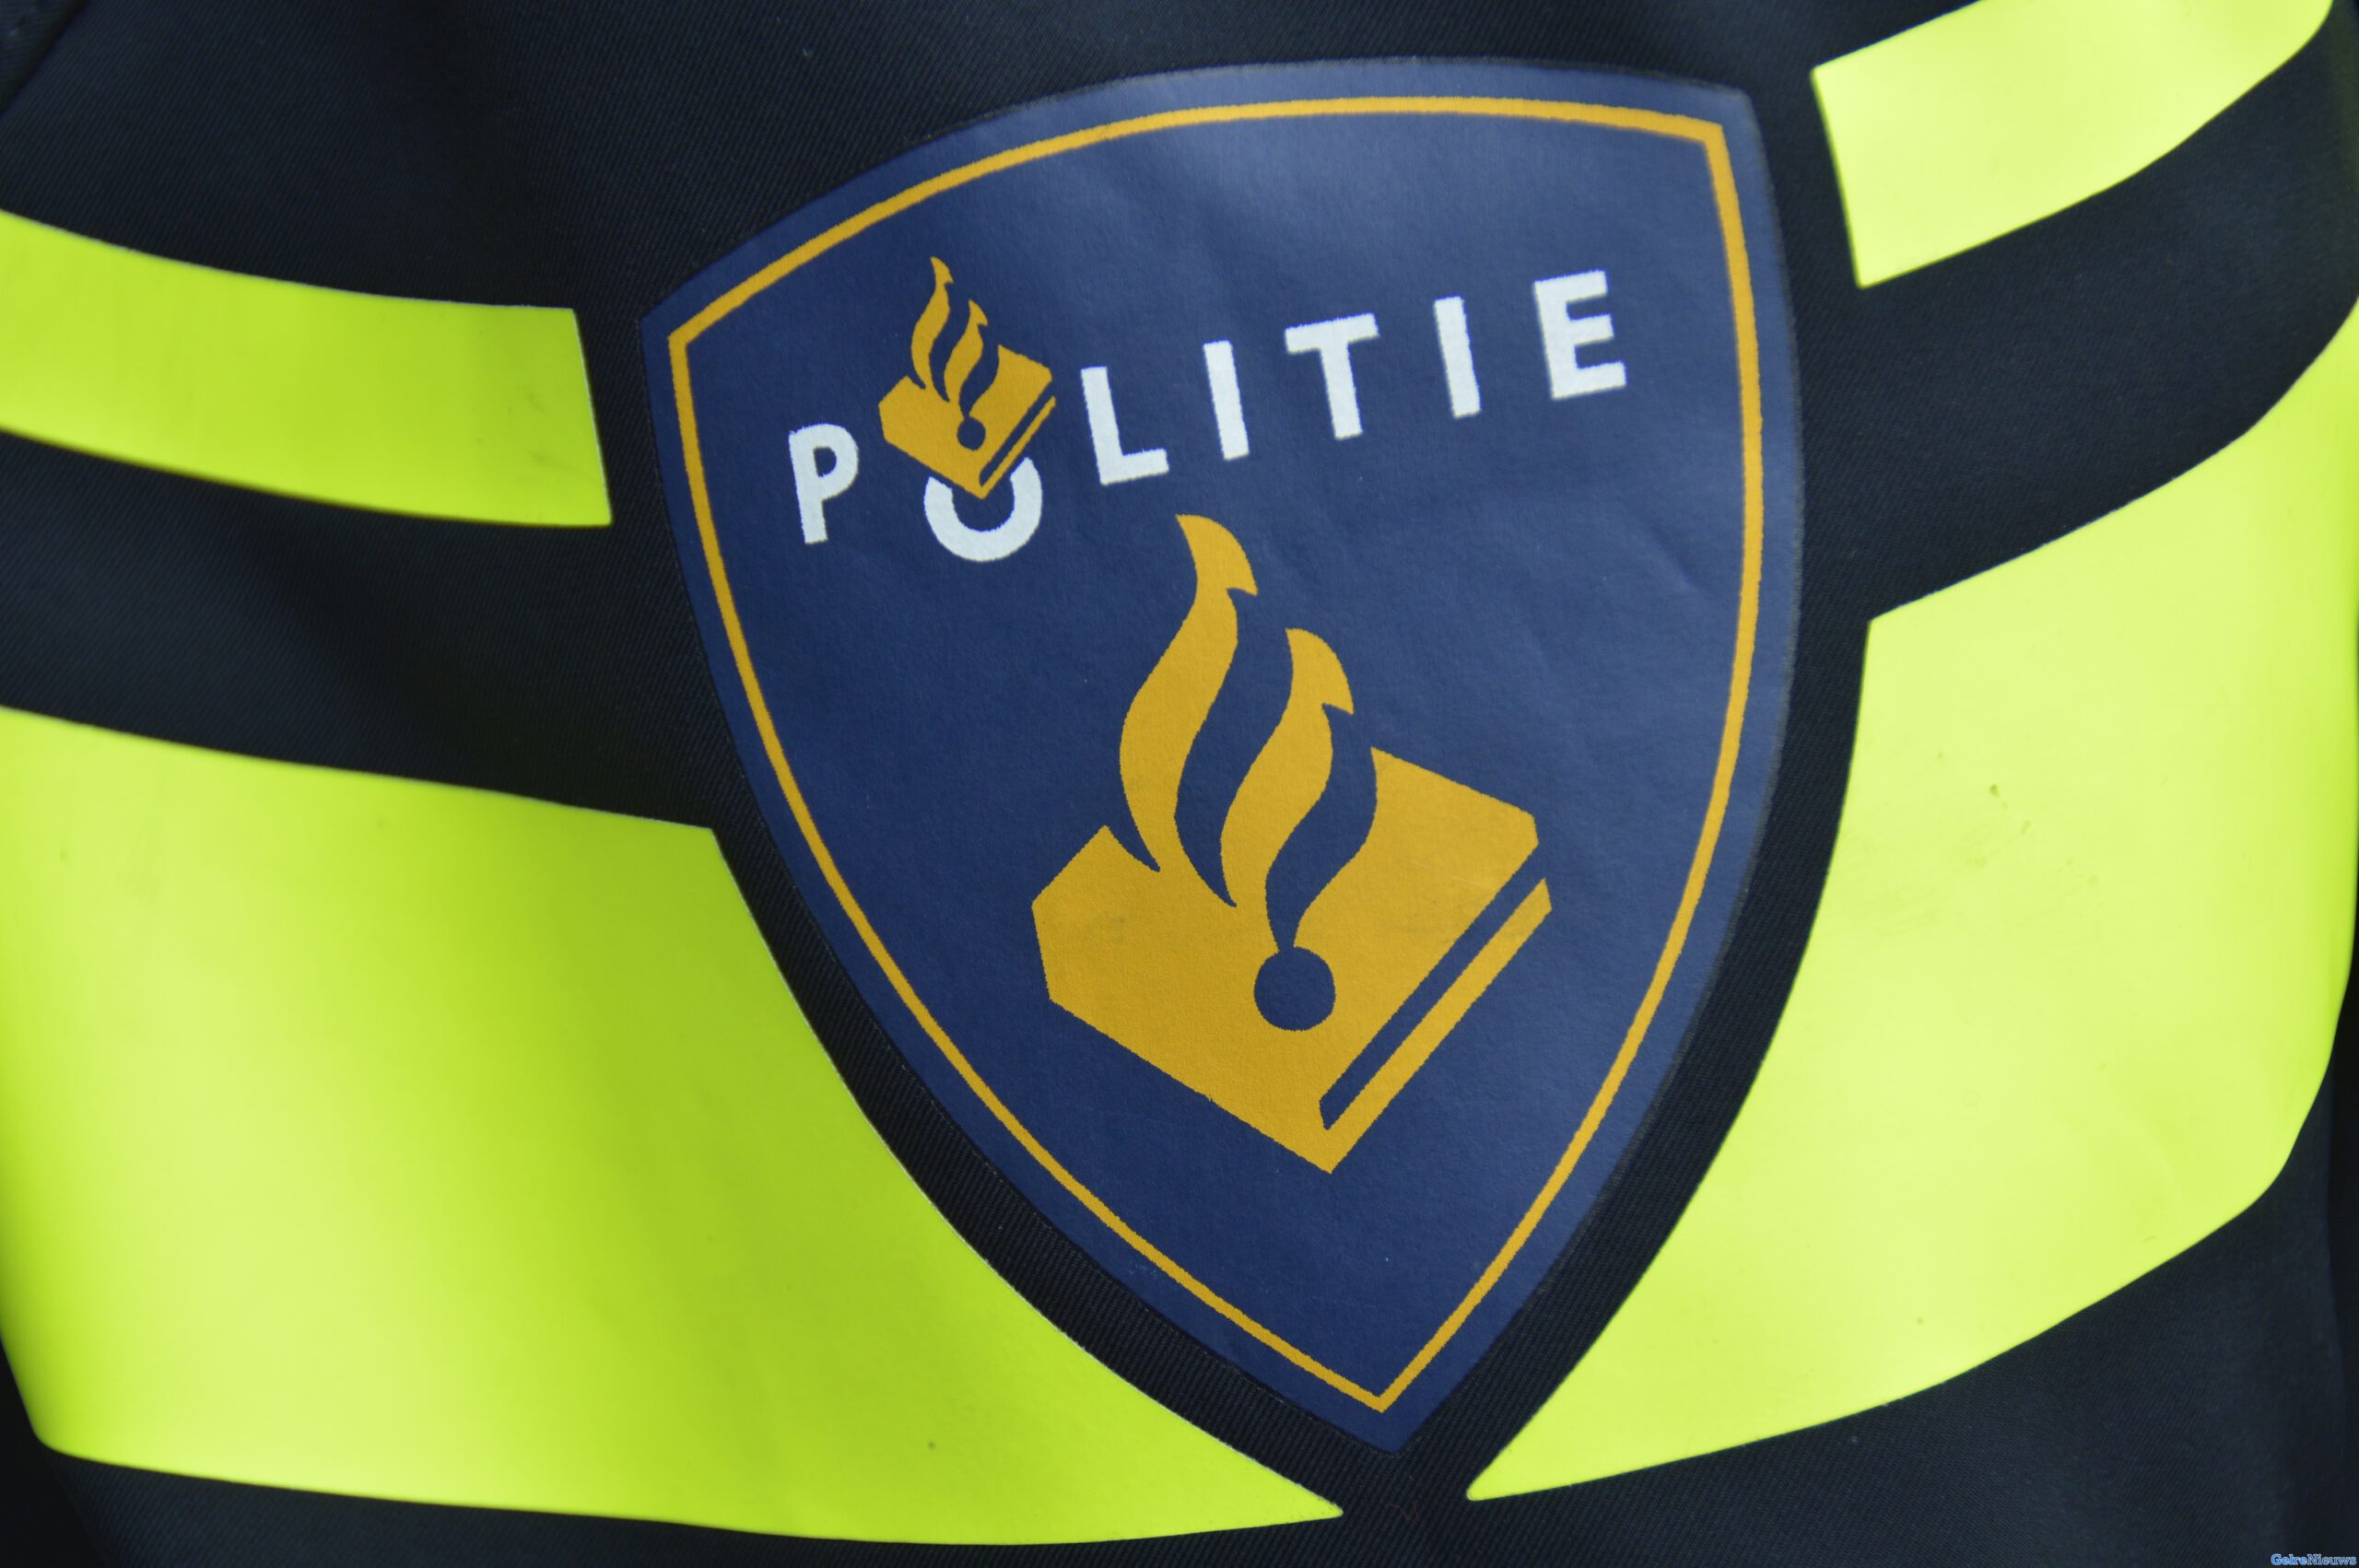 Woning Rotterdam beschoten, politie zoekt getuigen en beelden